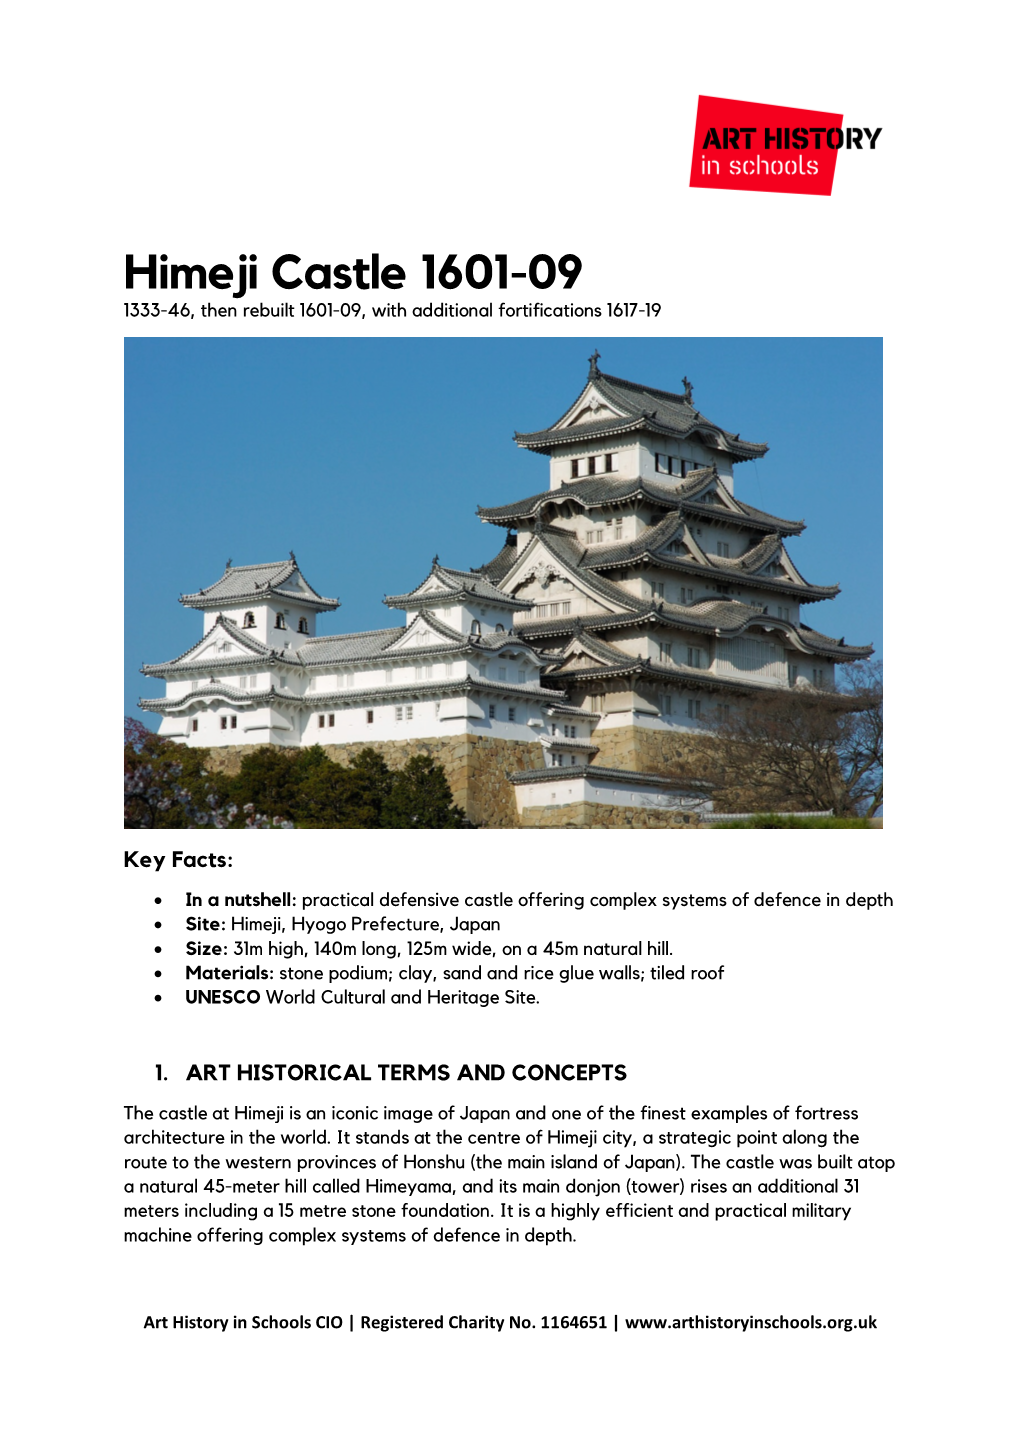 Himeji Castle, 1333-46